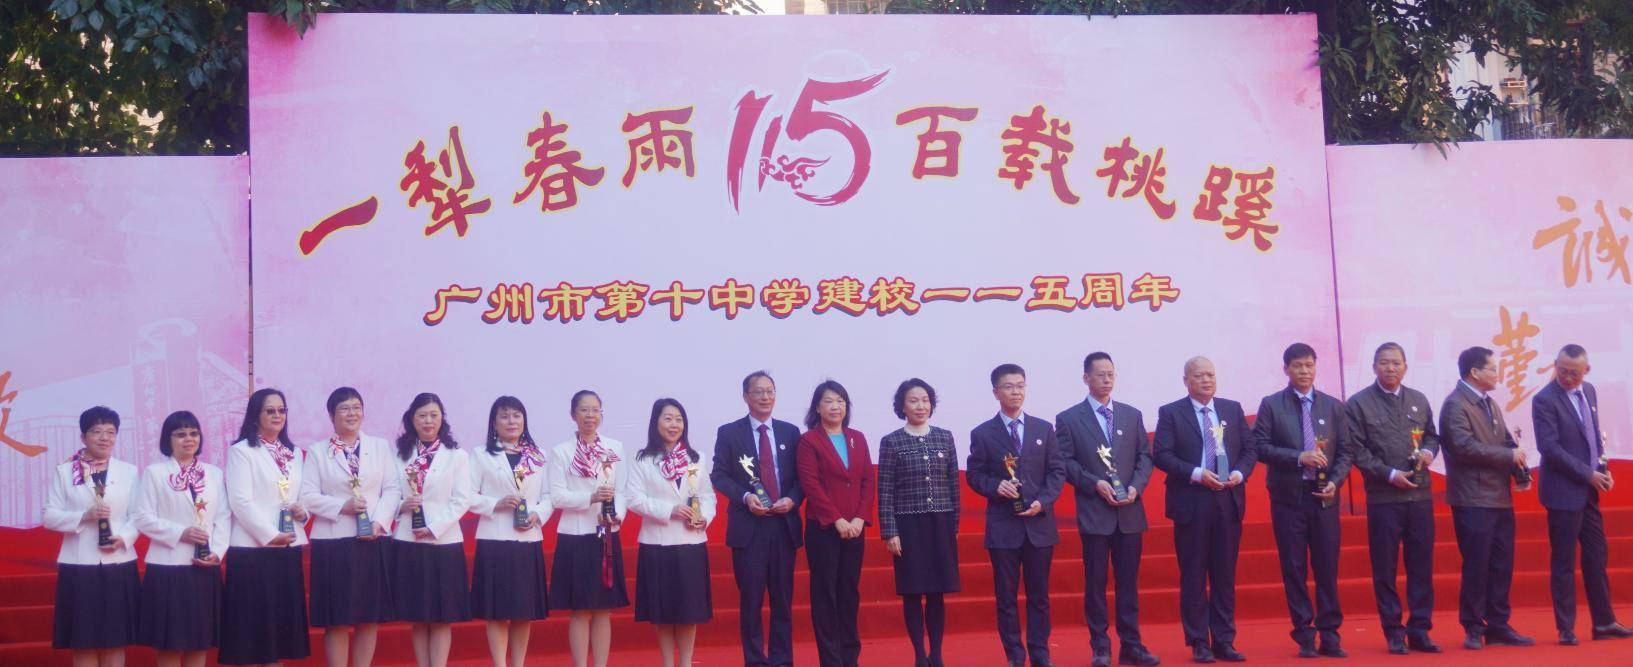 广州市第十中学喜迎115周年校庆